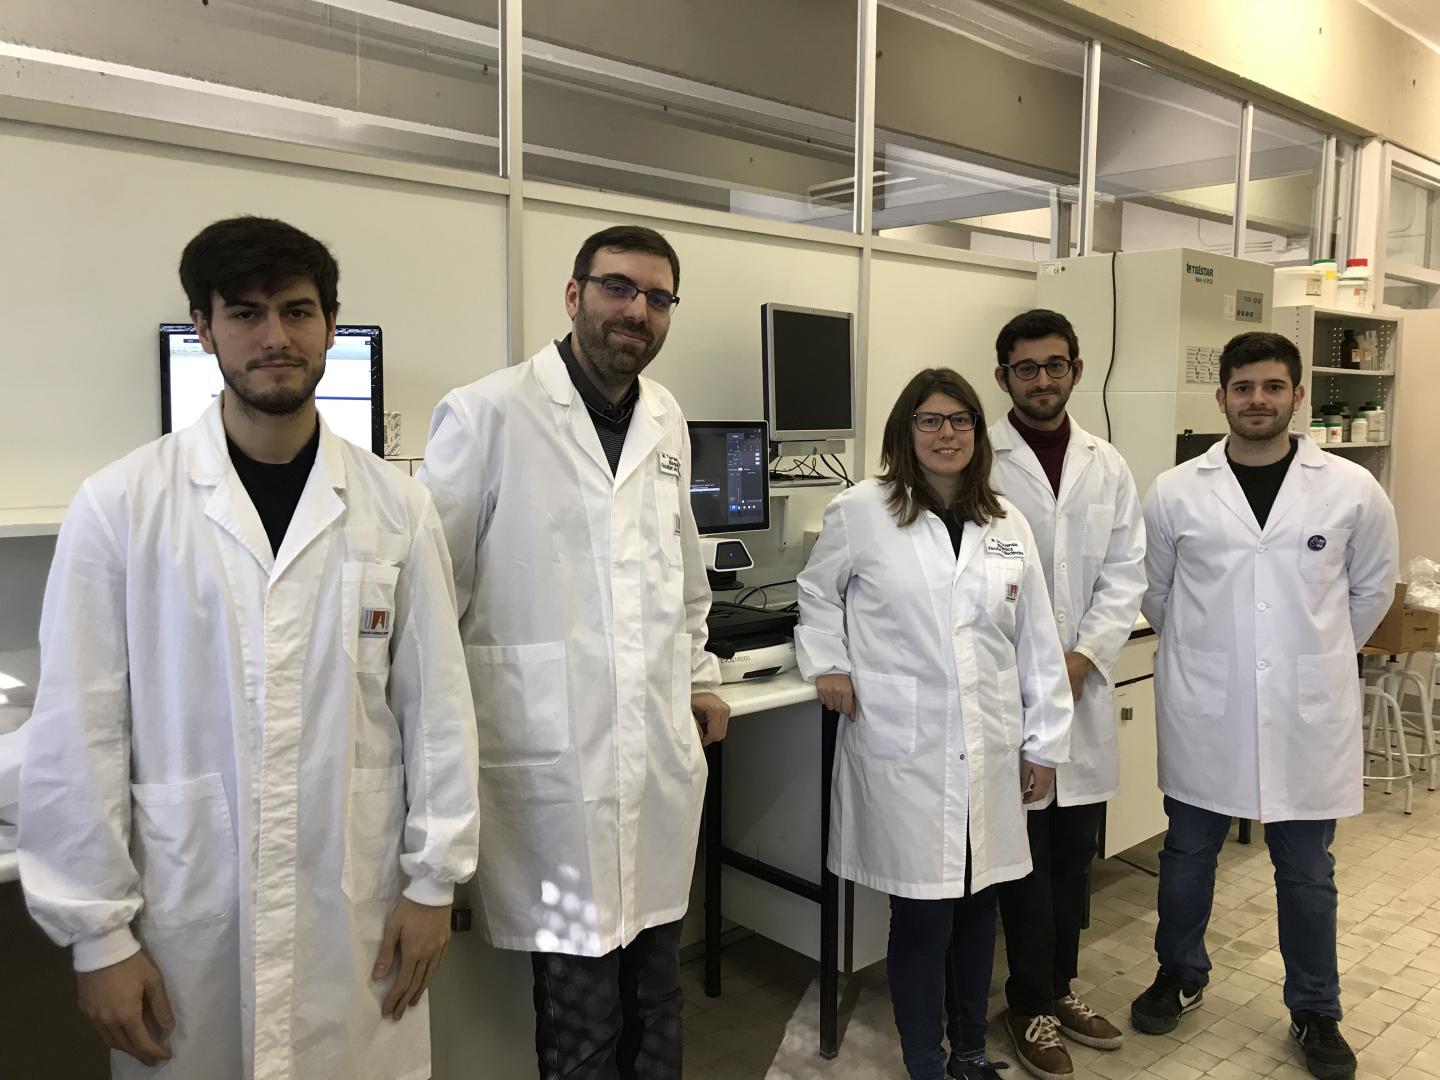 Marc Torrent Research Group at the Universitat Autonoma de Barcelona